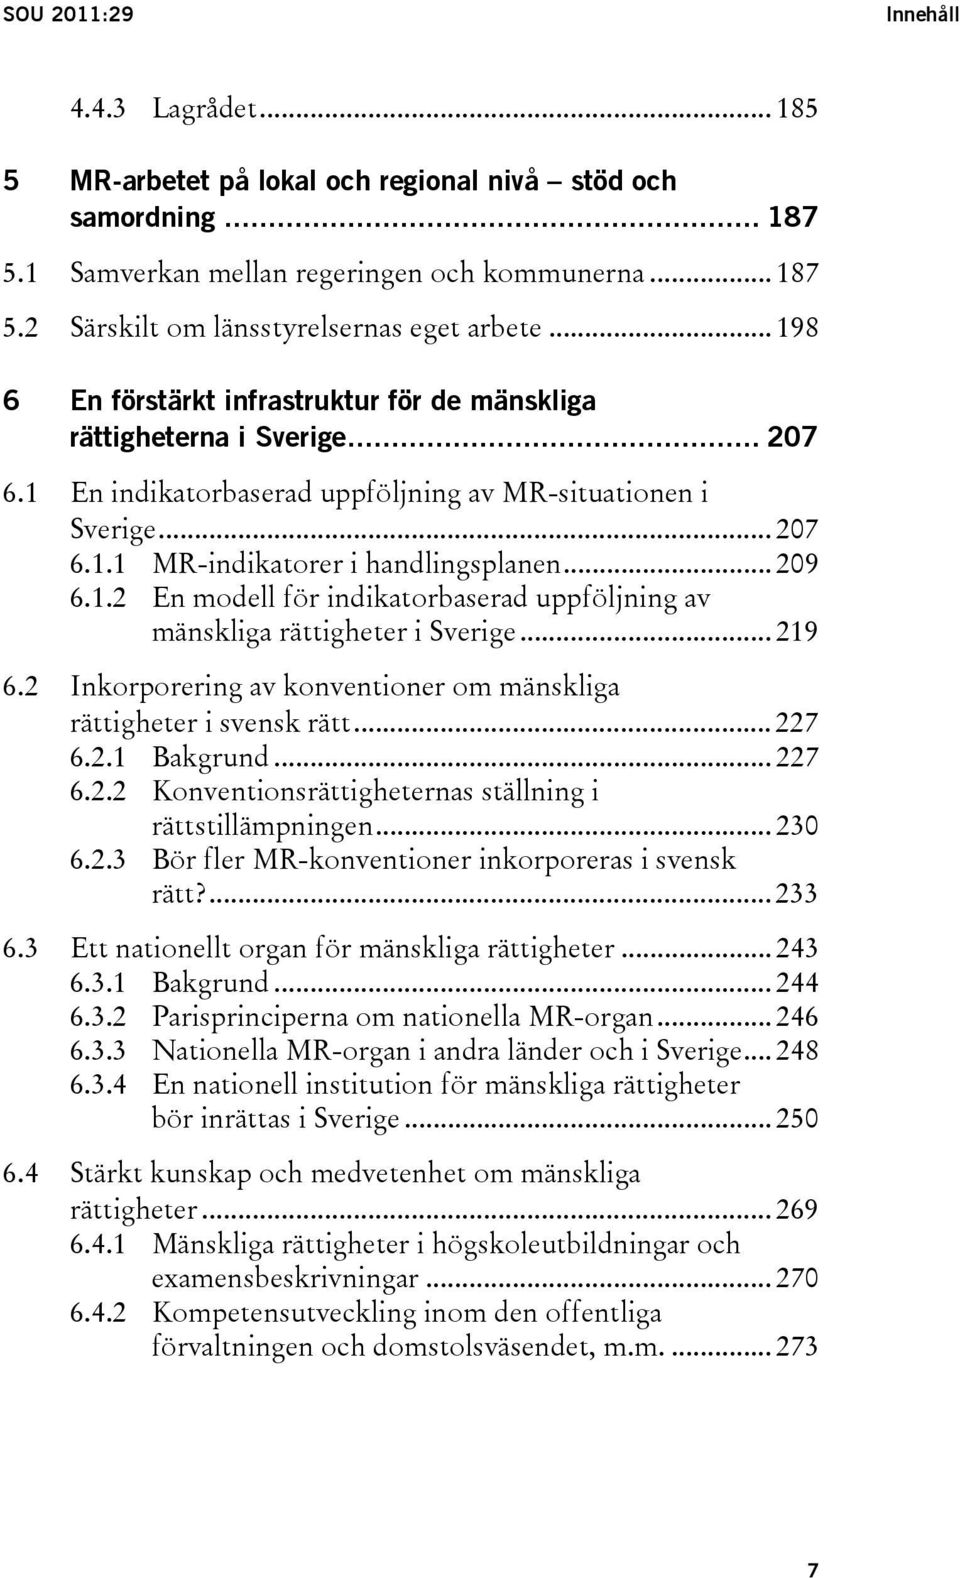 .. 209 6.1.2 En modell för indikatorbaserad uppföljning av mänskliga rättigheter i Sverige... 219 6.2 Inkorporering av konventioner om mänskliga rättigheter i svensk rätt... 227 6.2.1 Bakgrund... 227 6.2.2 Konventionsrättigheternas ställning i rättstillämpningen.